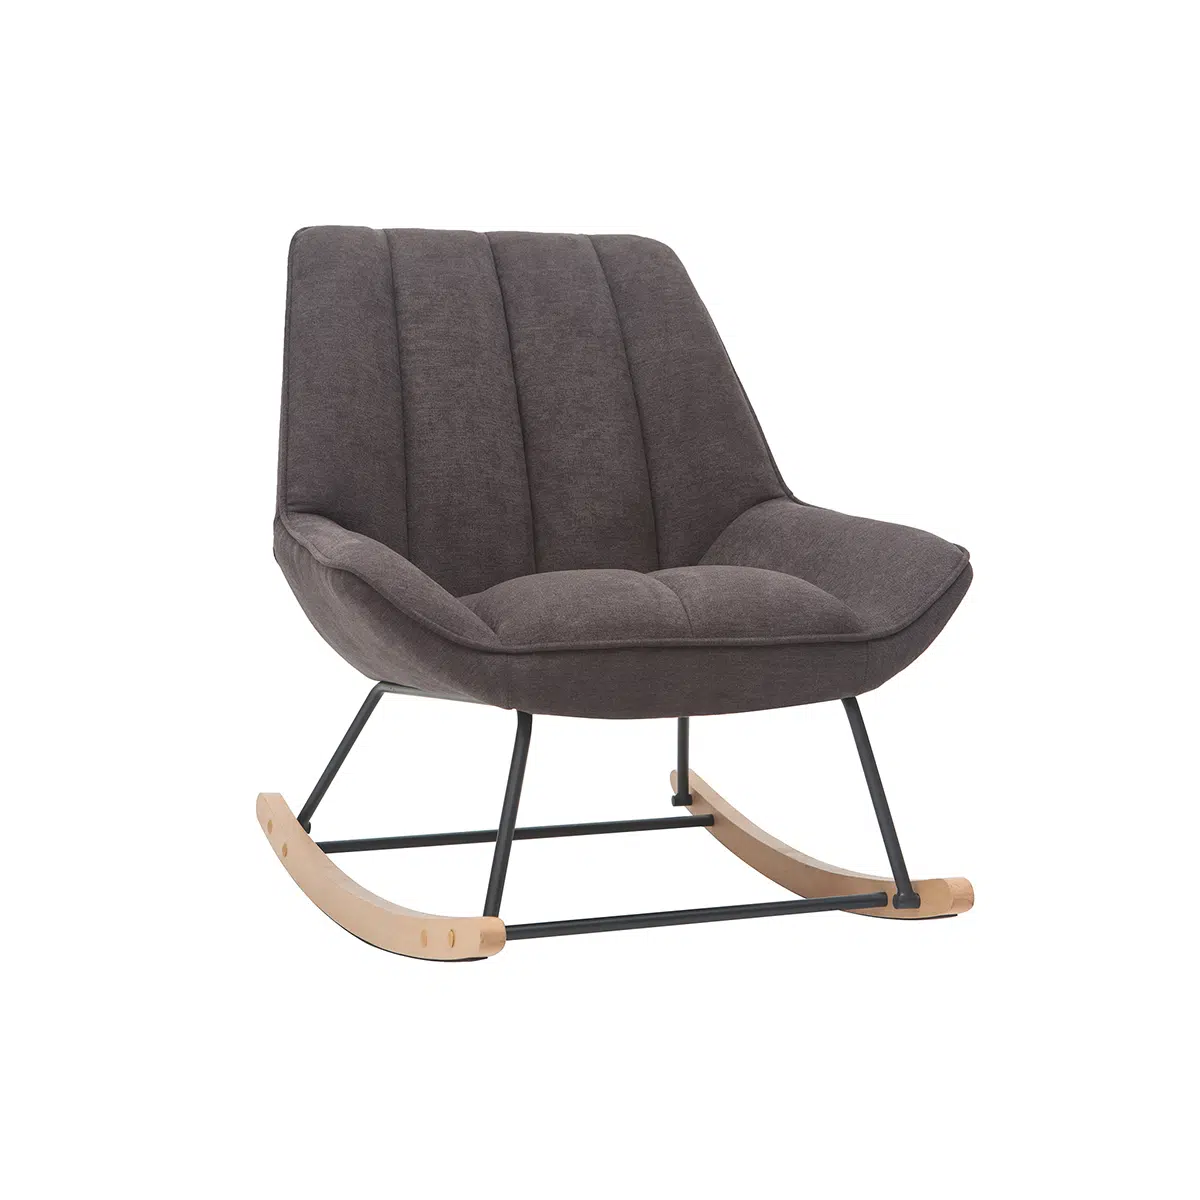 Rocking chair design en tissu effet velours gris foncé